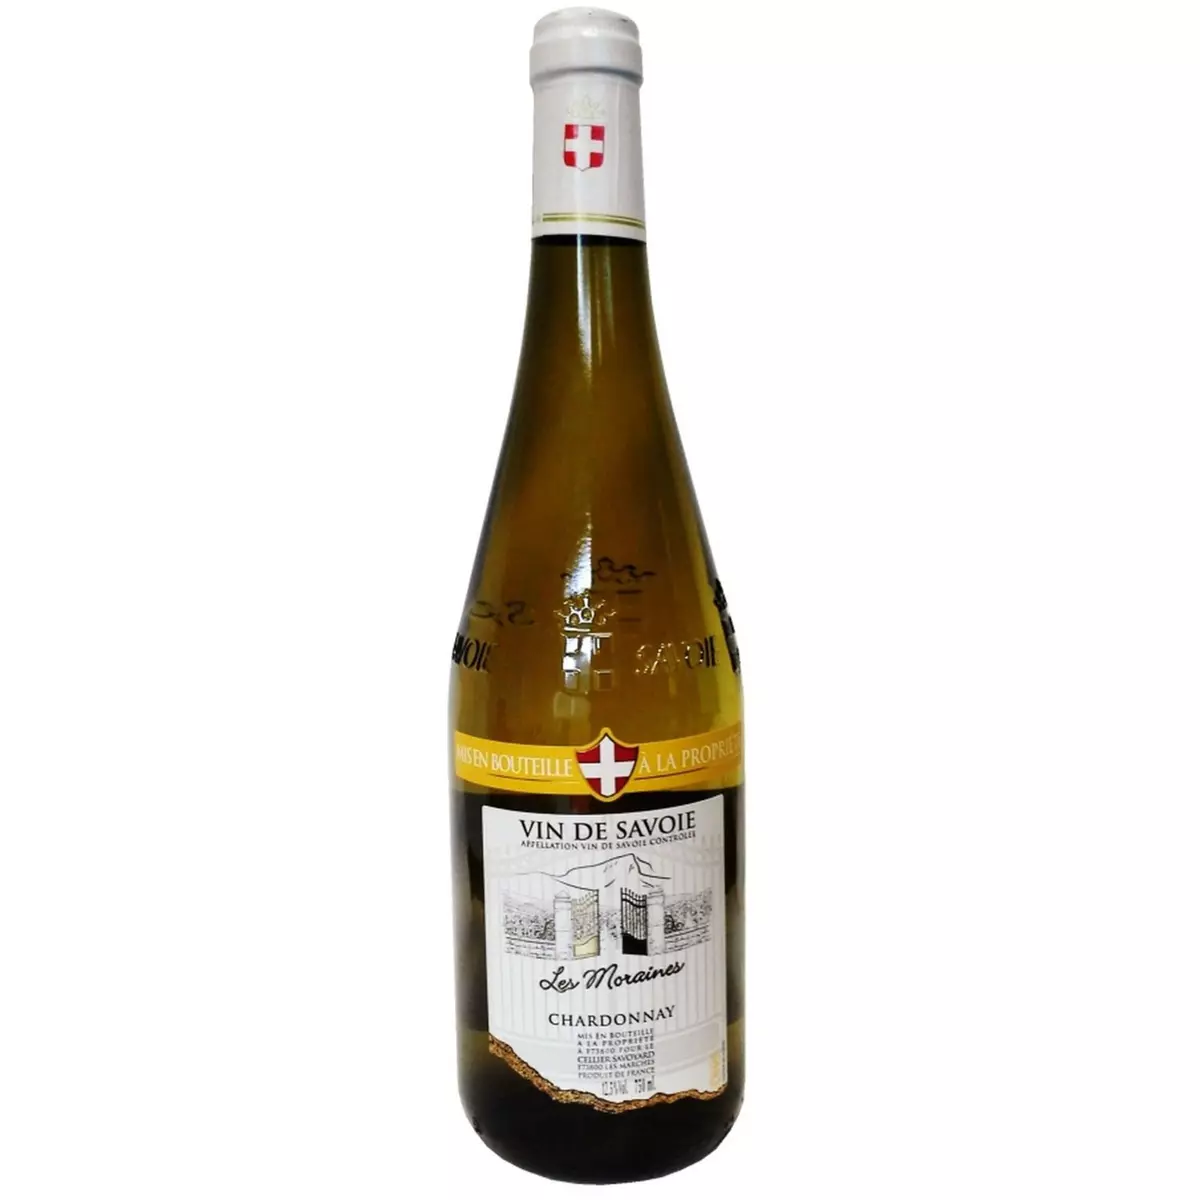 ADRIEN VACHER AOP Vin de Savoie Chardonnay Les Moraines blanc 75cl